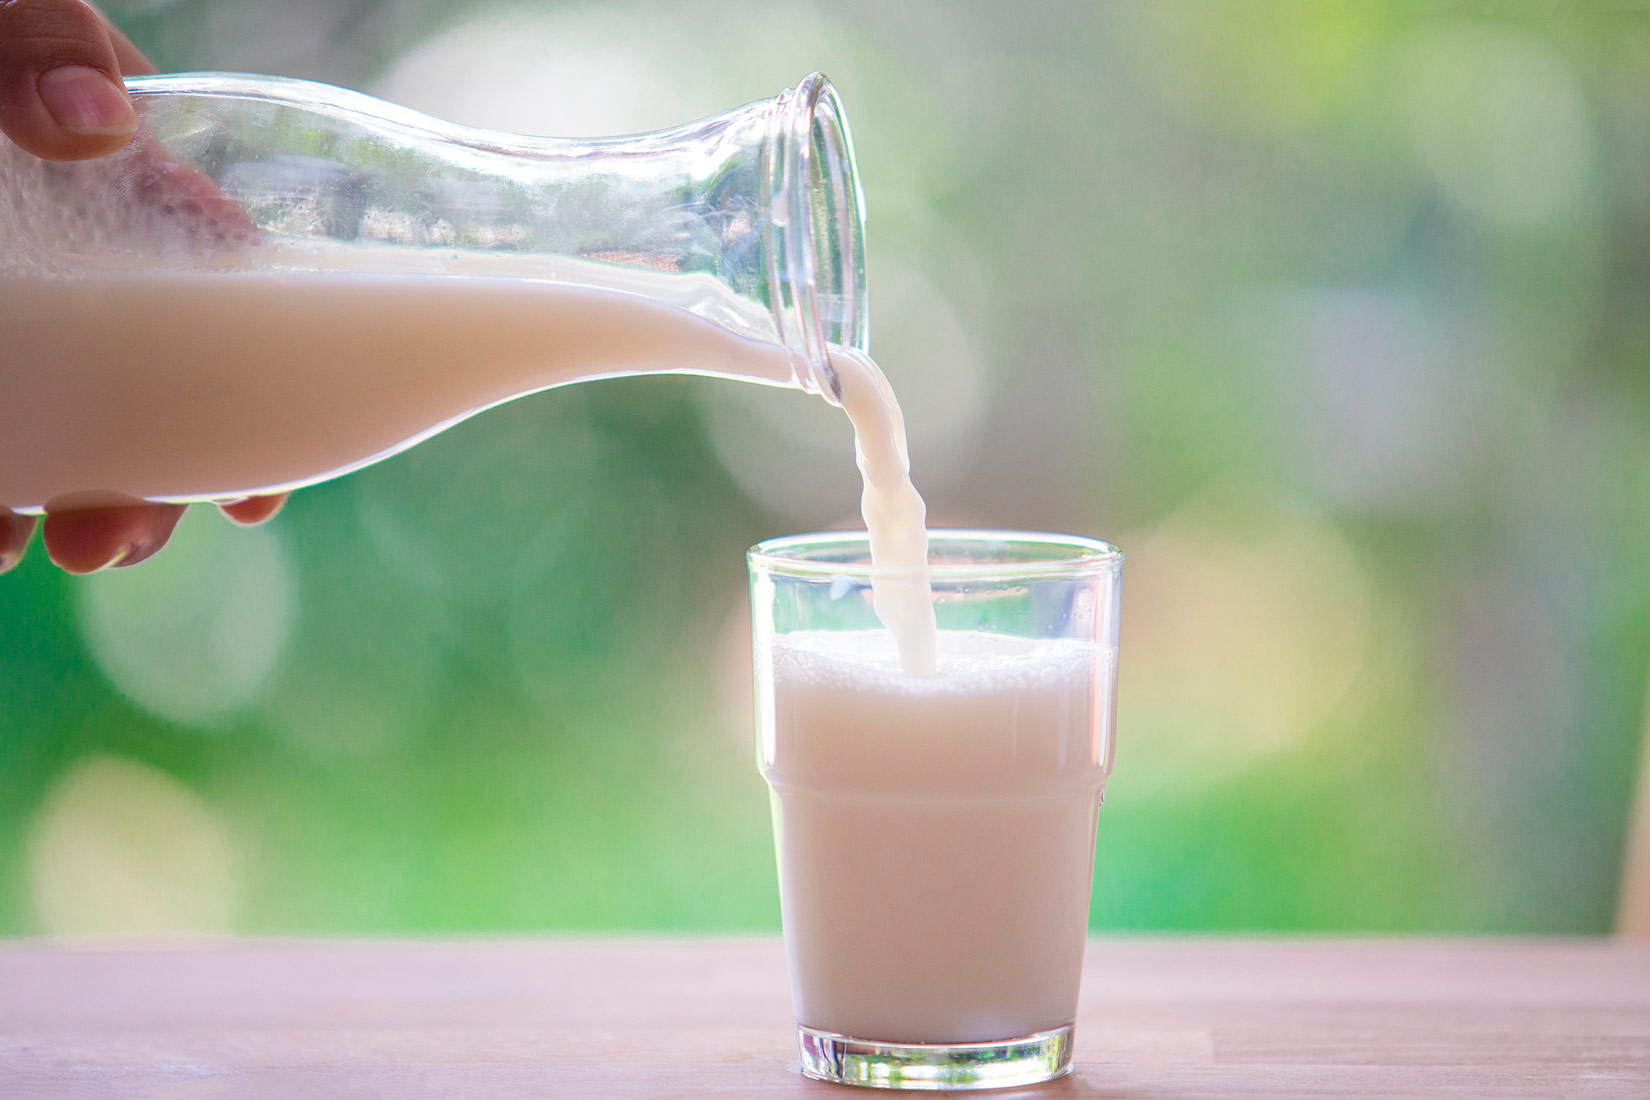 Fotografija prikazuje ruku osobe koja ulijeva mlijeko iz staklene boce u čašu.